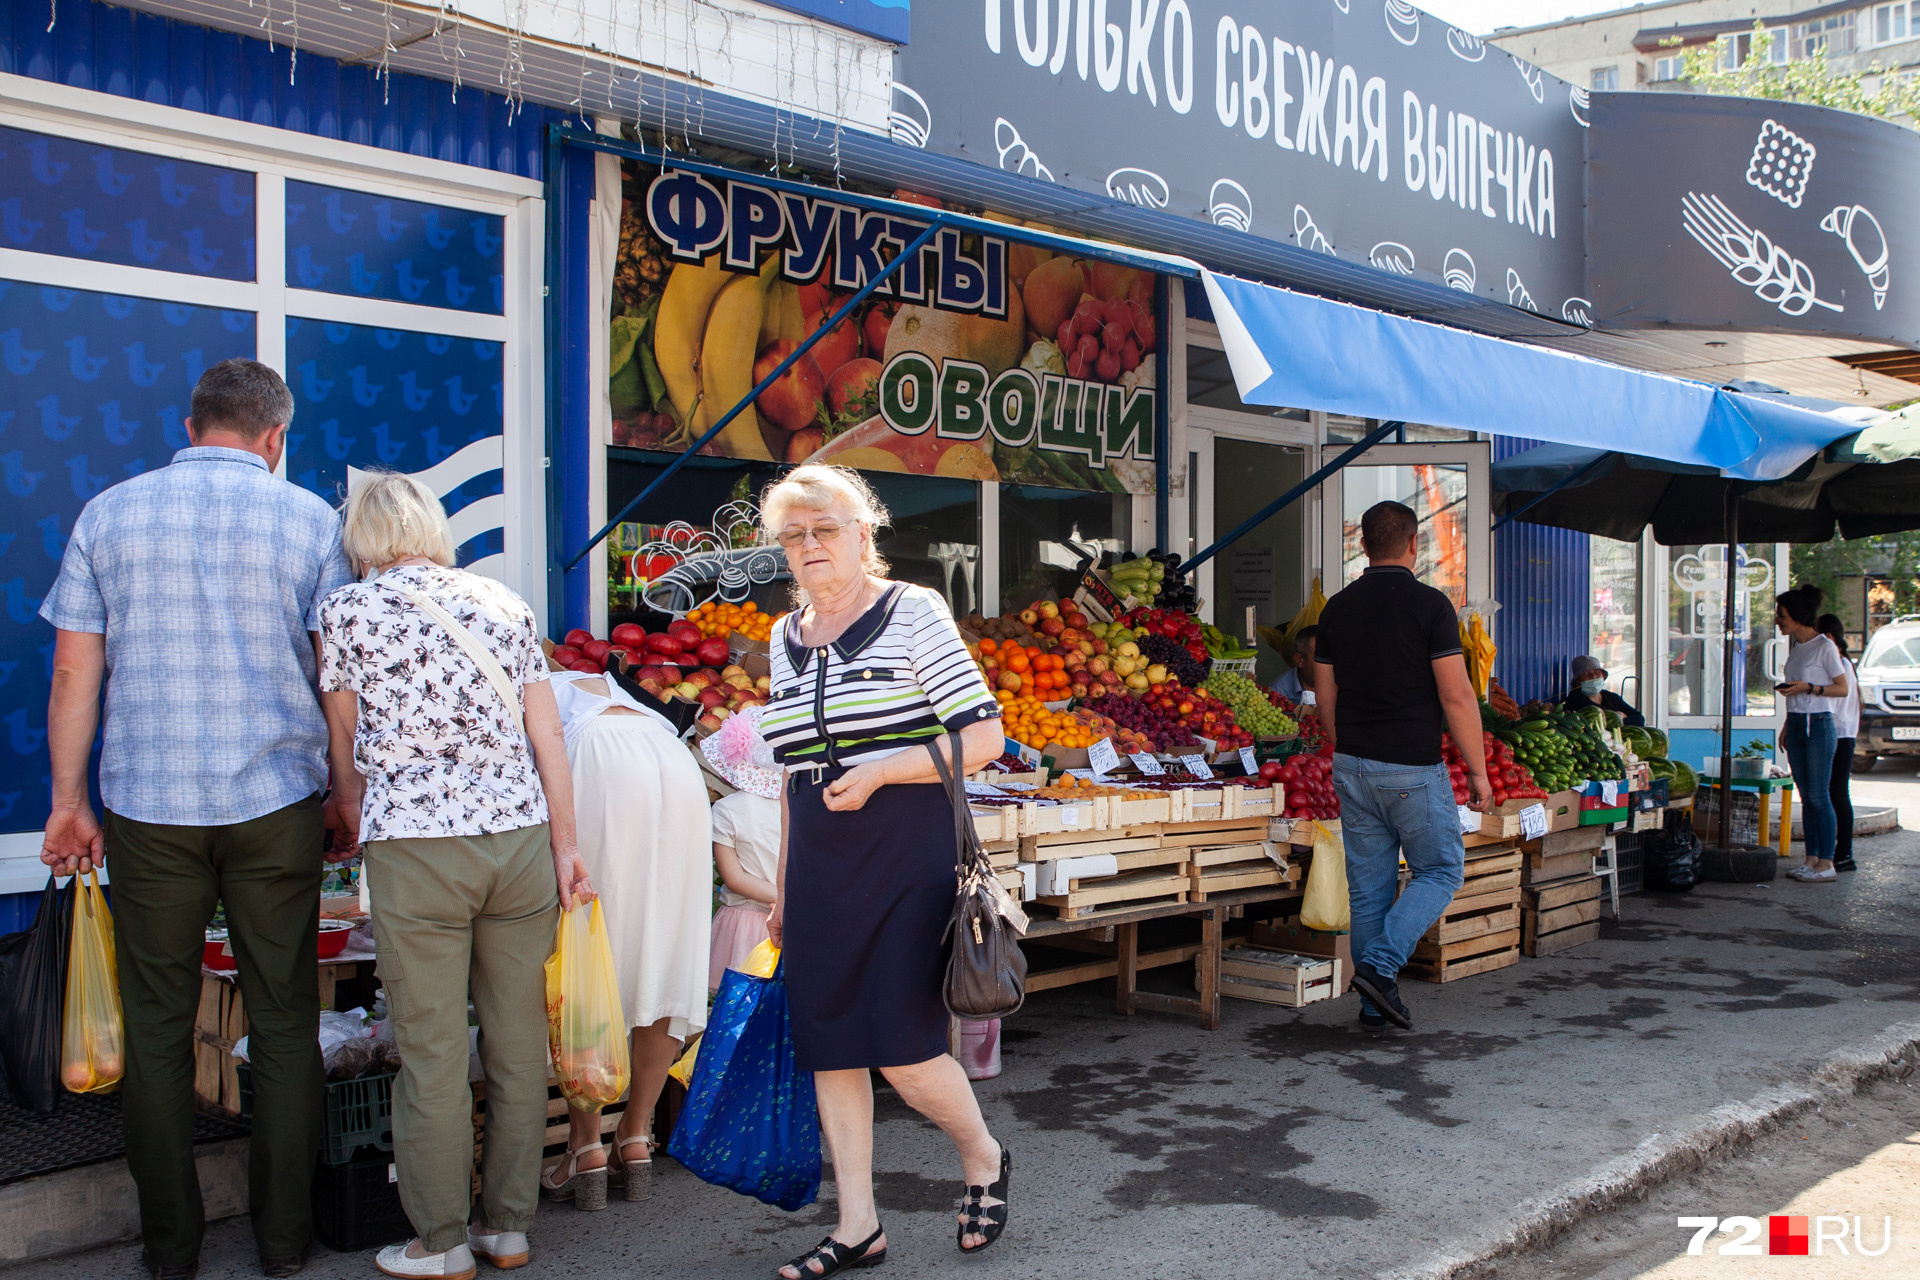 Очереди к таким торговым лавкам есть всегда — в Тюмень наконец пришло тепло, люди с удовольствием покупают привозные фрукты